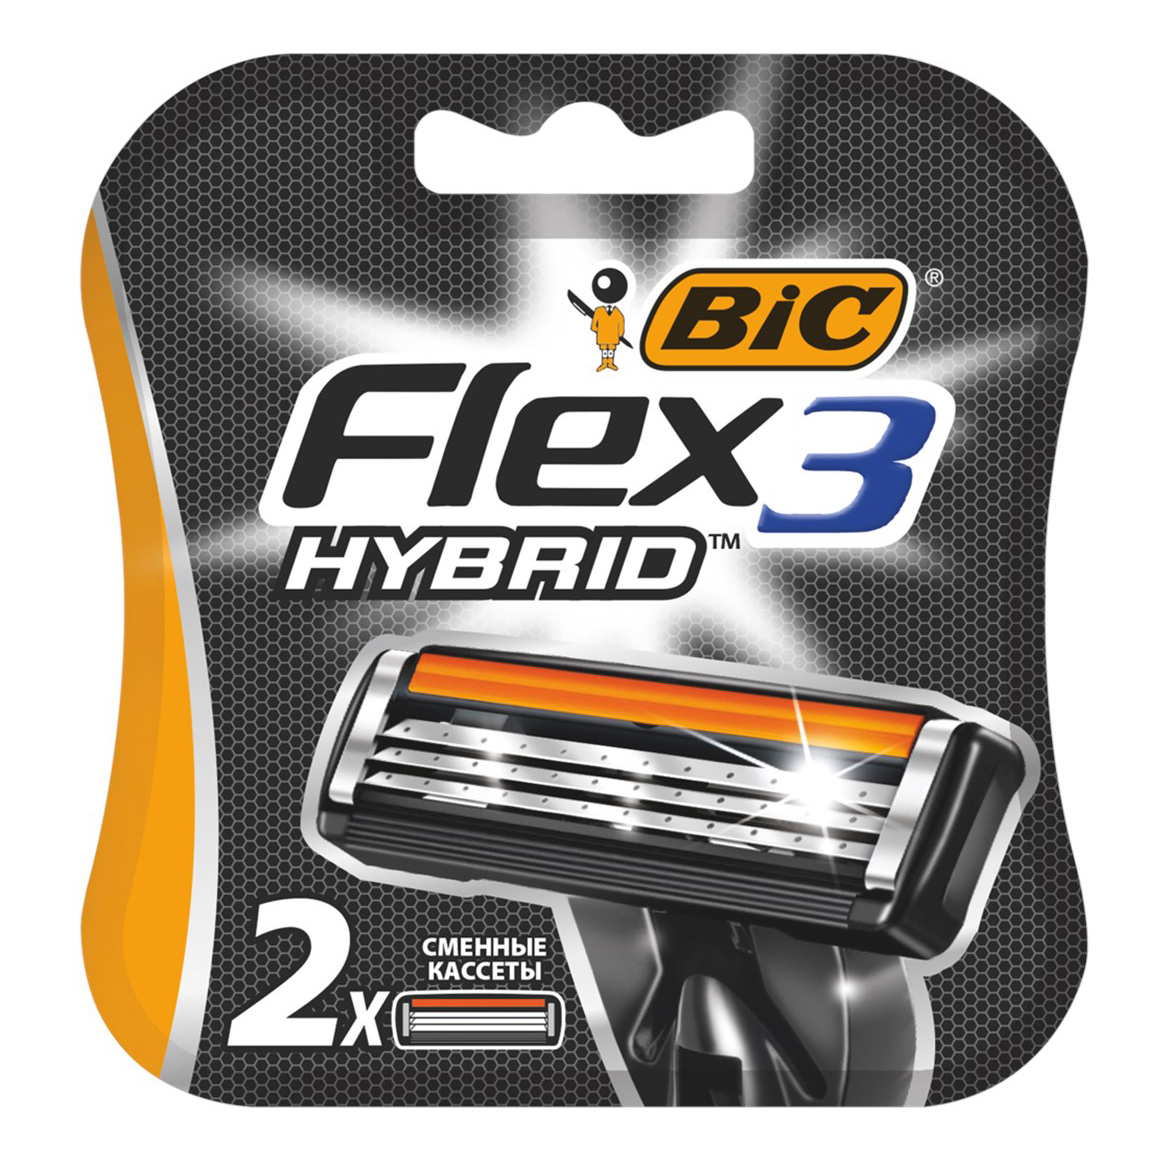 Сменная кассета Bic Flex 3 Hybrid 3 лезвия 2 шт jbl cp e701 pump head greenline сменная голова внешнего фильтра